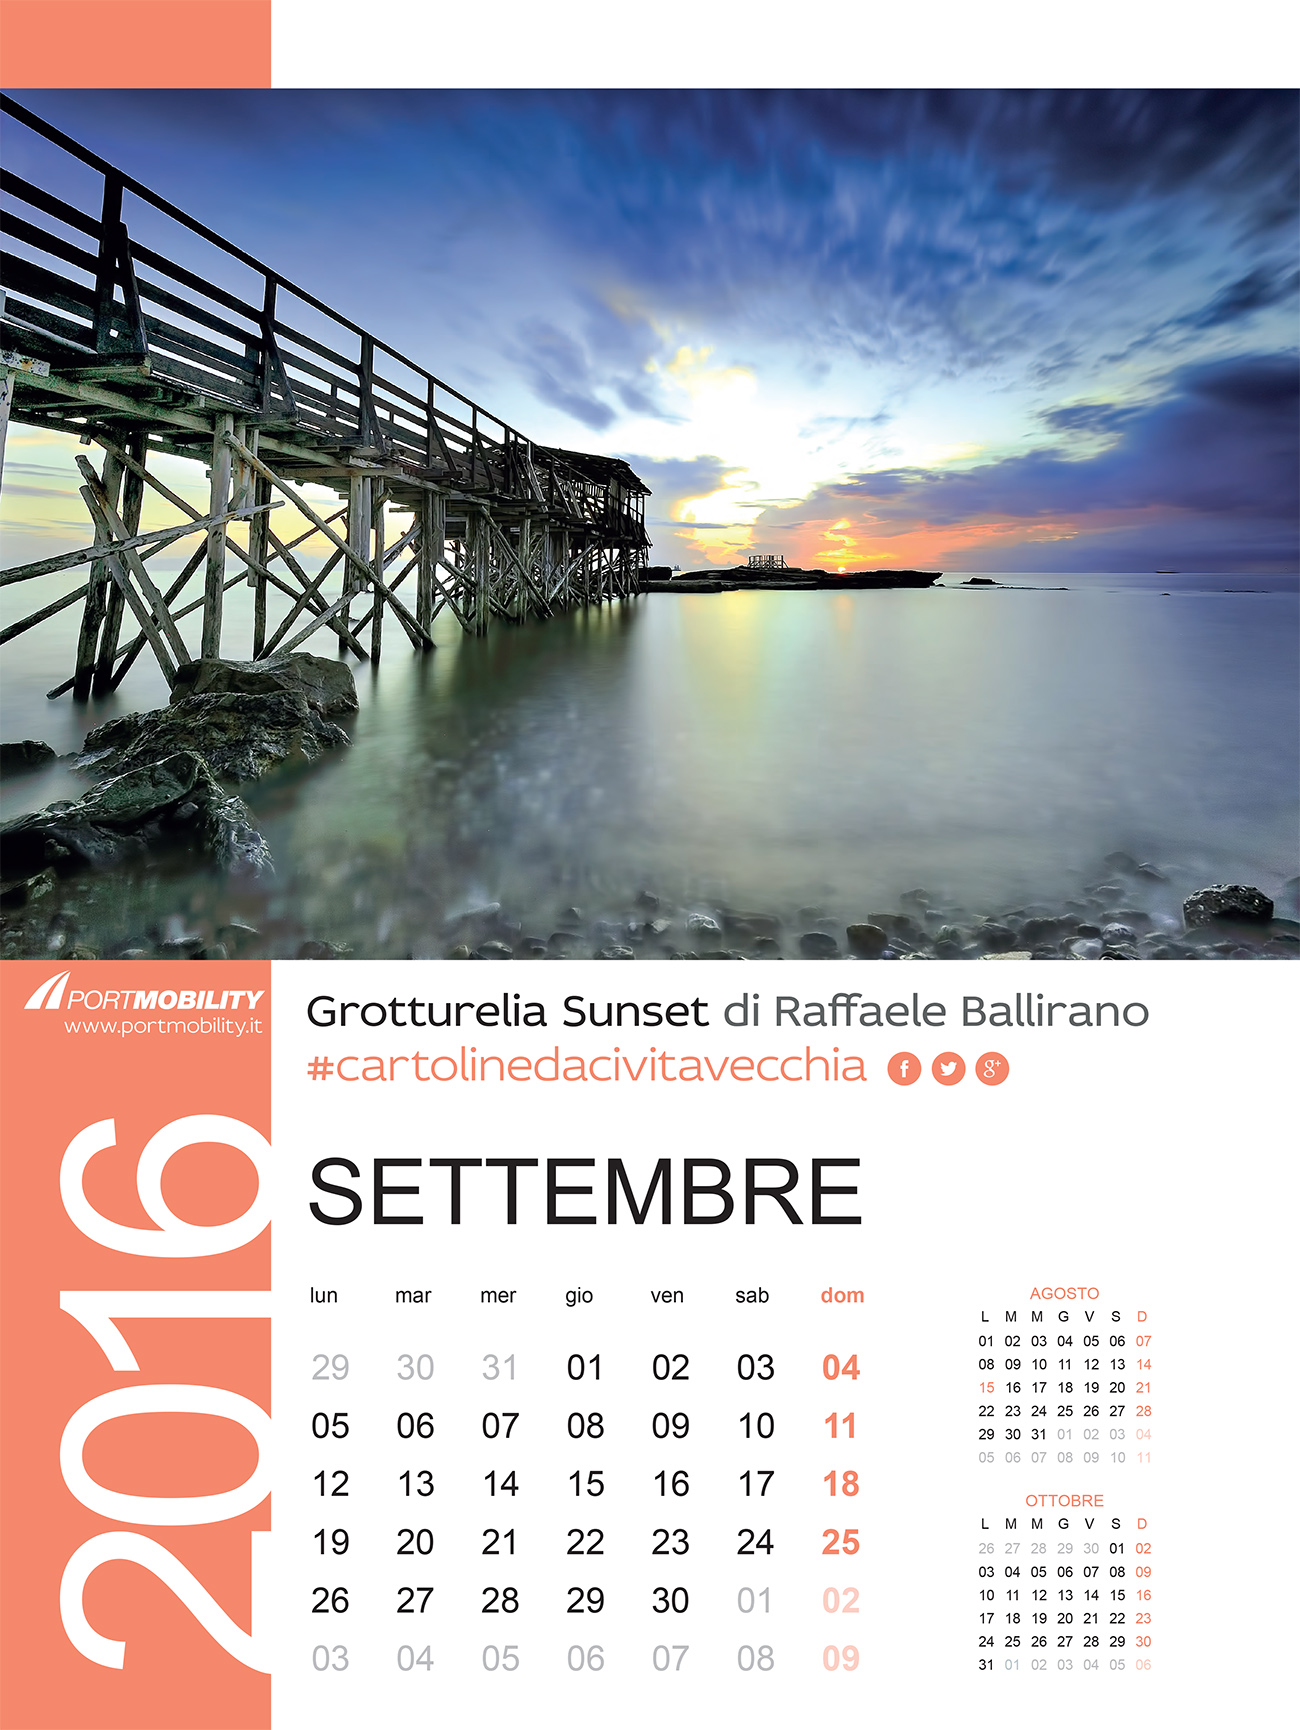 Cartoline da Civitavecchia: il mese di Settembre 2016